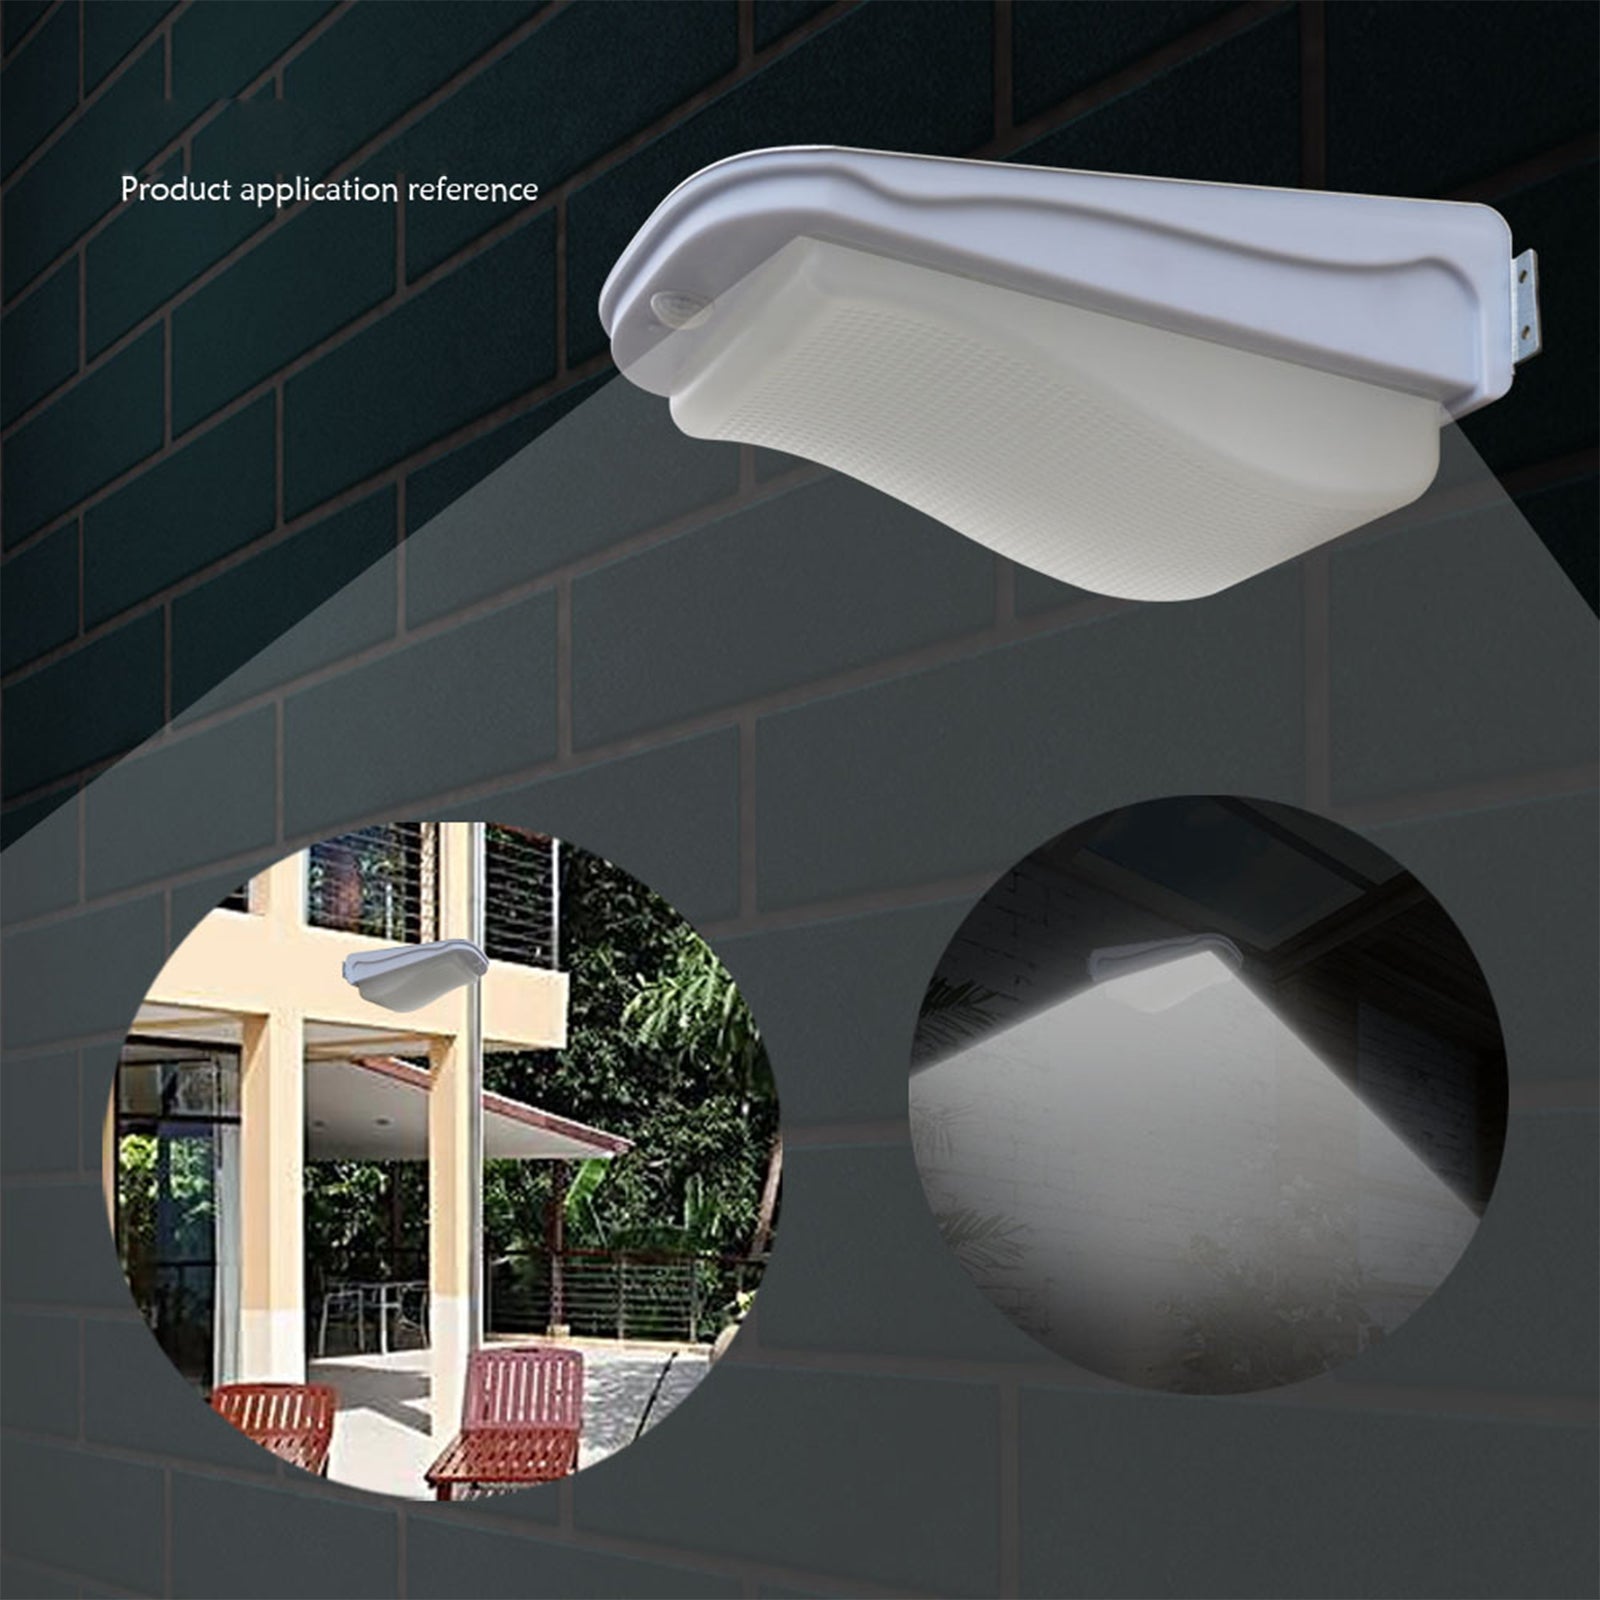 TD® LCC Lampe Led Solaire avec Detecteur movement Eclairage sans fil etanche Spotlight puissante pour Jardin Terrasse Escalier bâtim